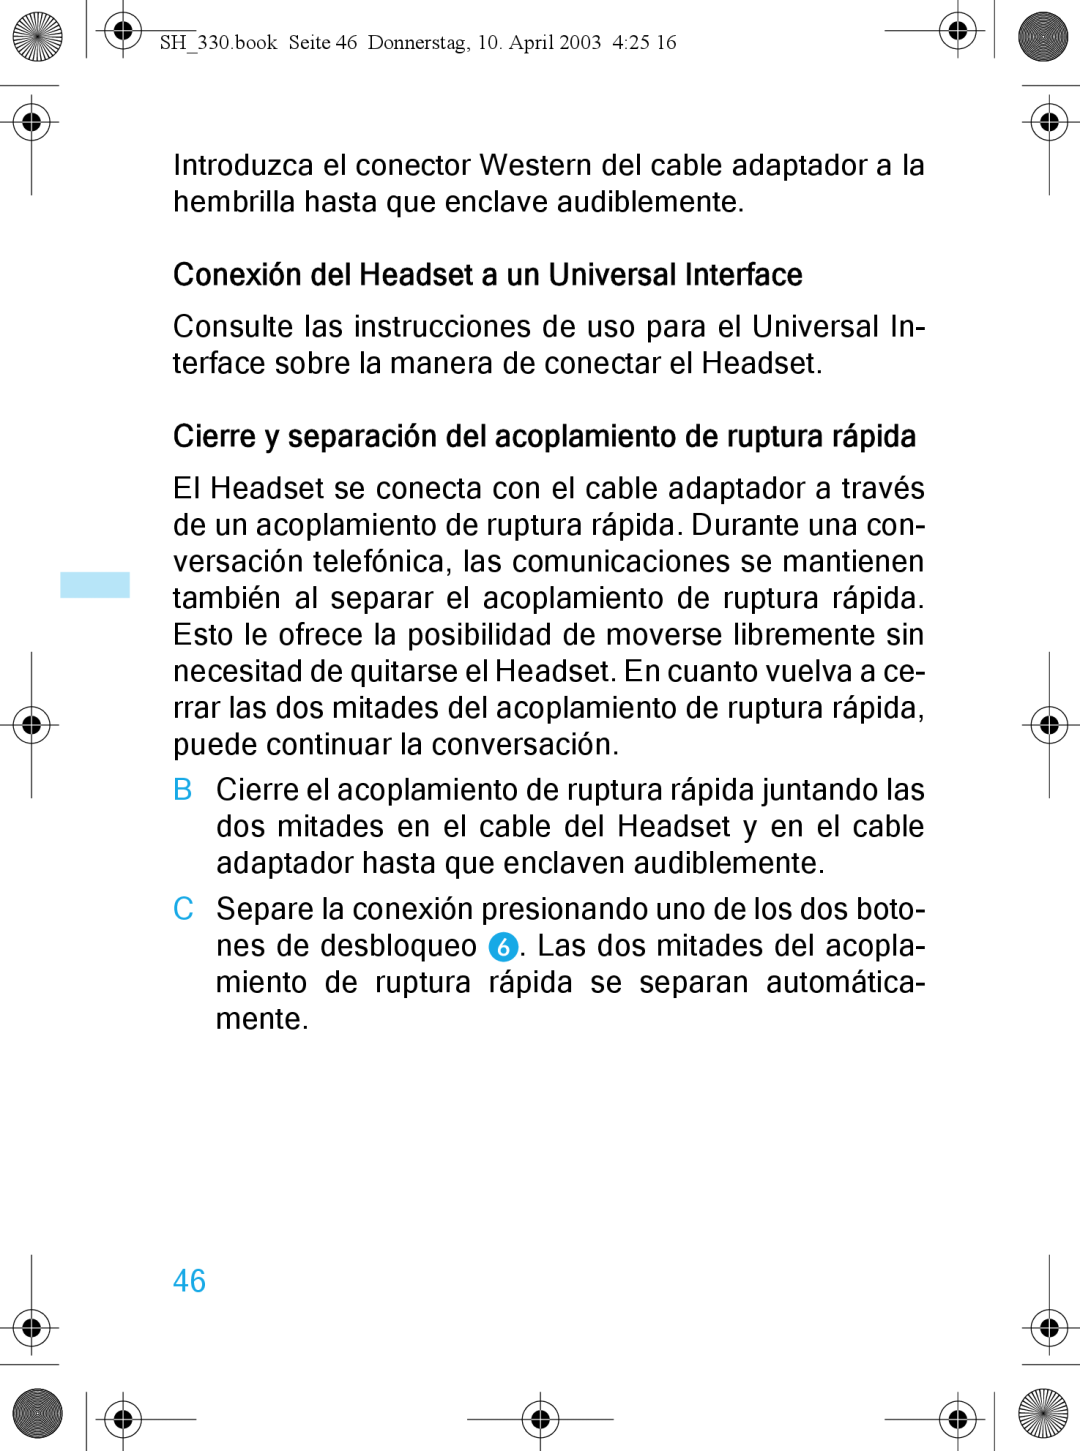 Sennheiser SH 330 manual Conexión del Headset a un Universal Interface 